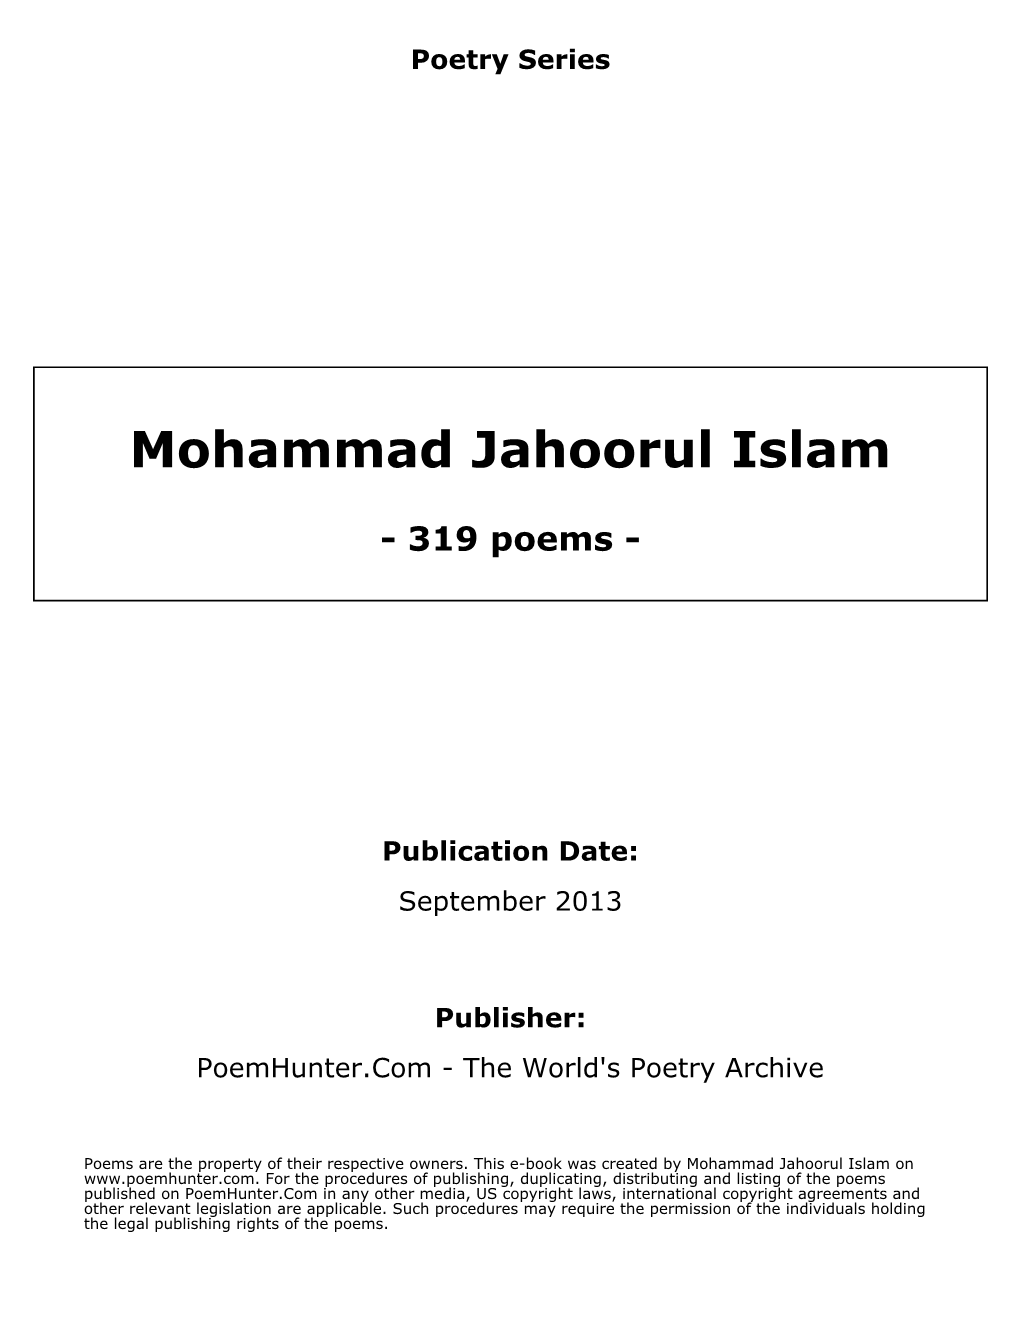 Mohammad Jahoorul Islam